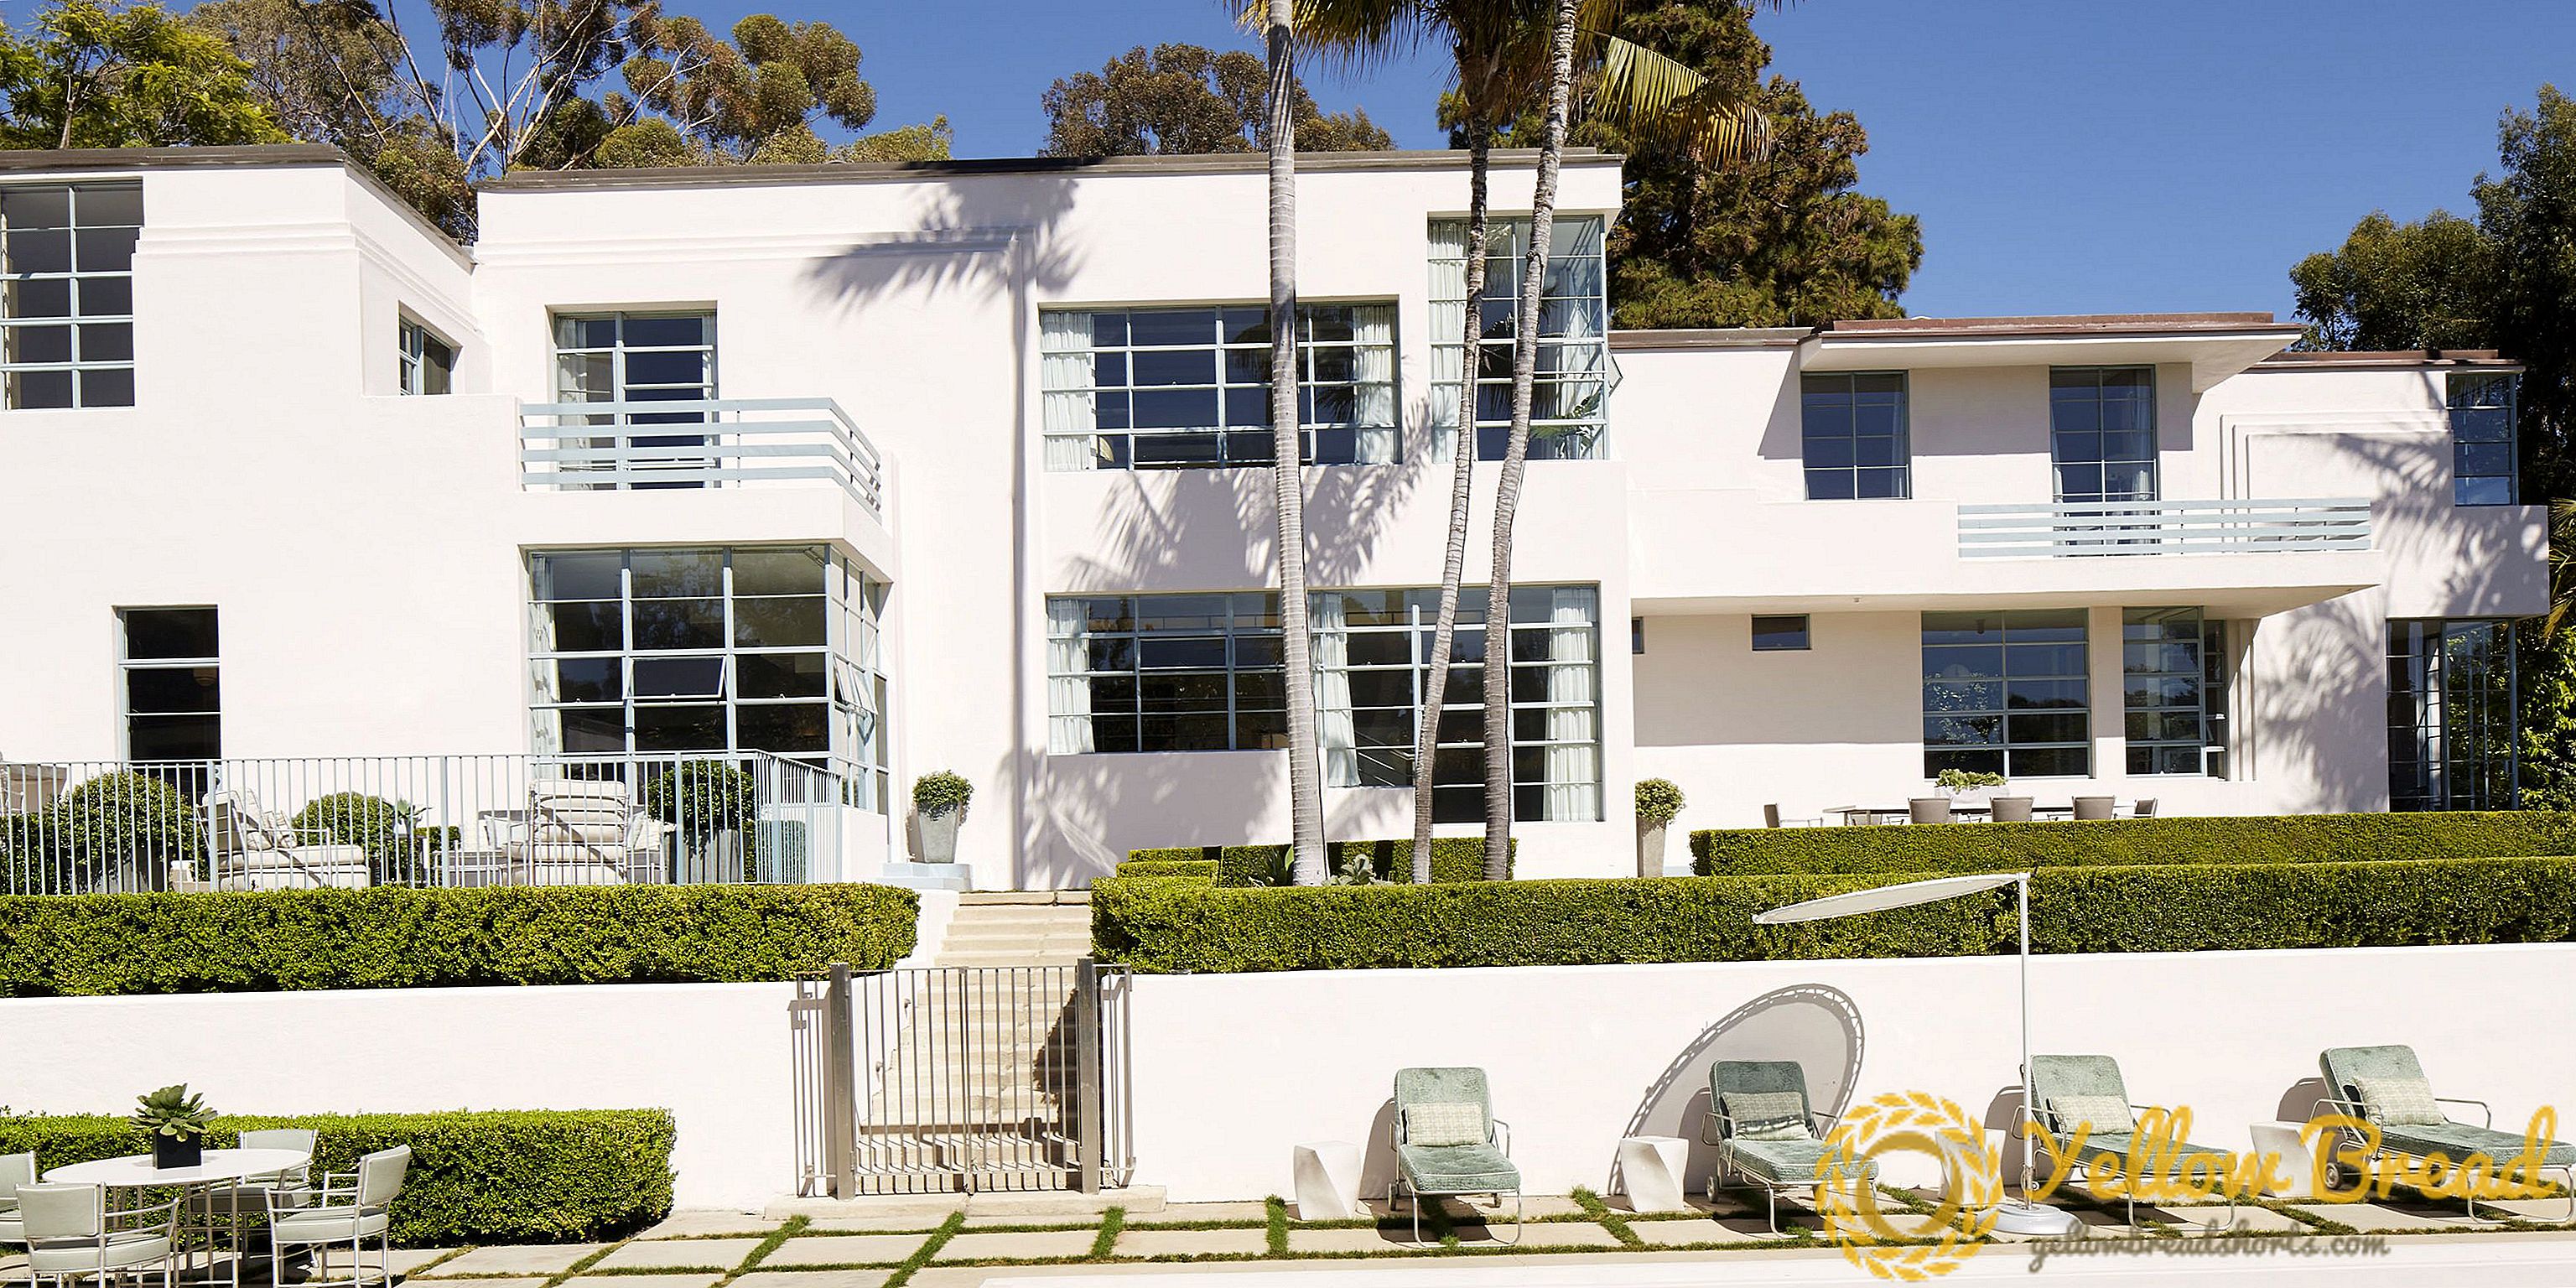 HOUSE TOUR: Une maison Art déco qui honore son héritage du vieil Hollywood